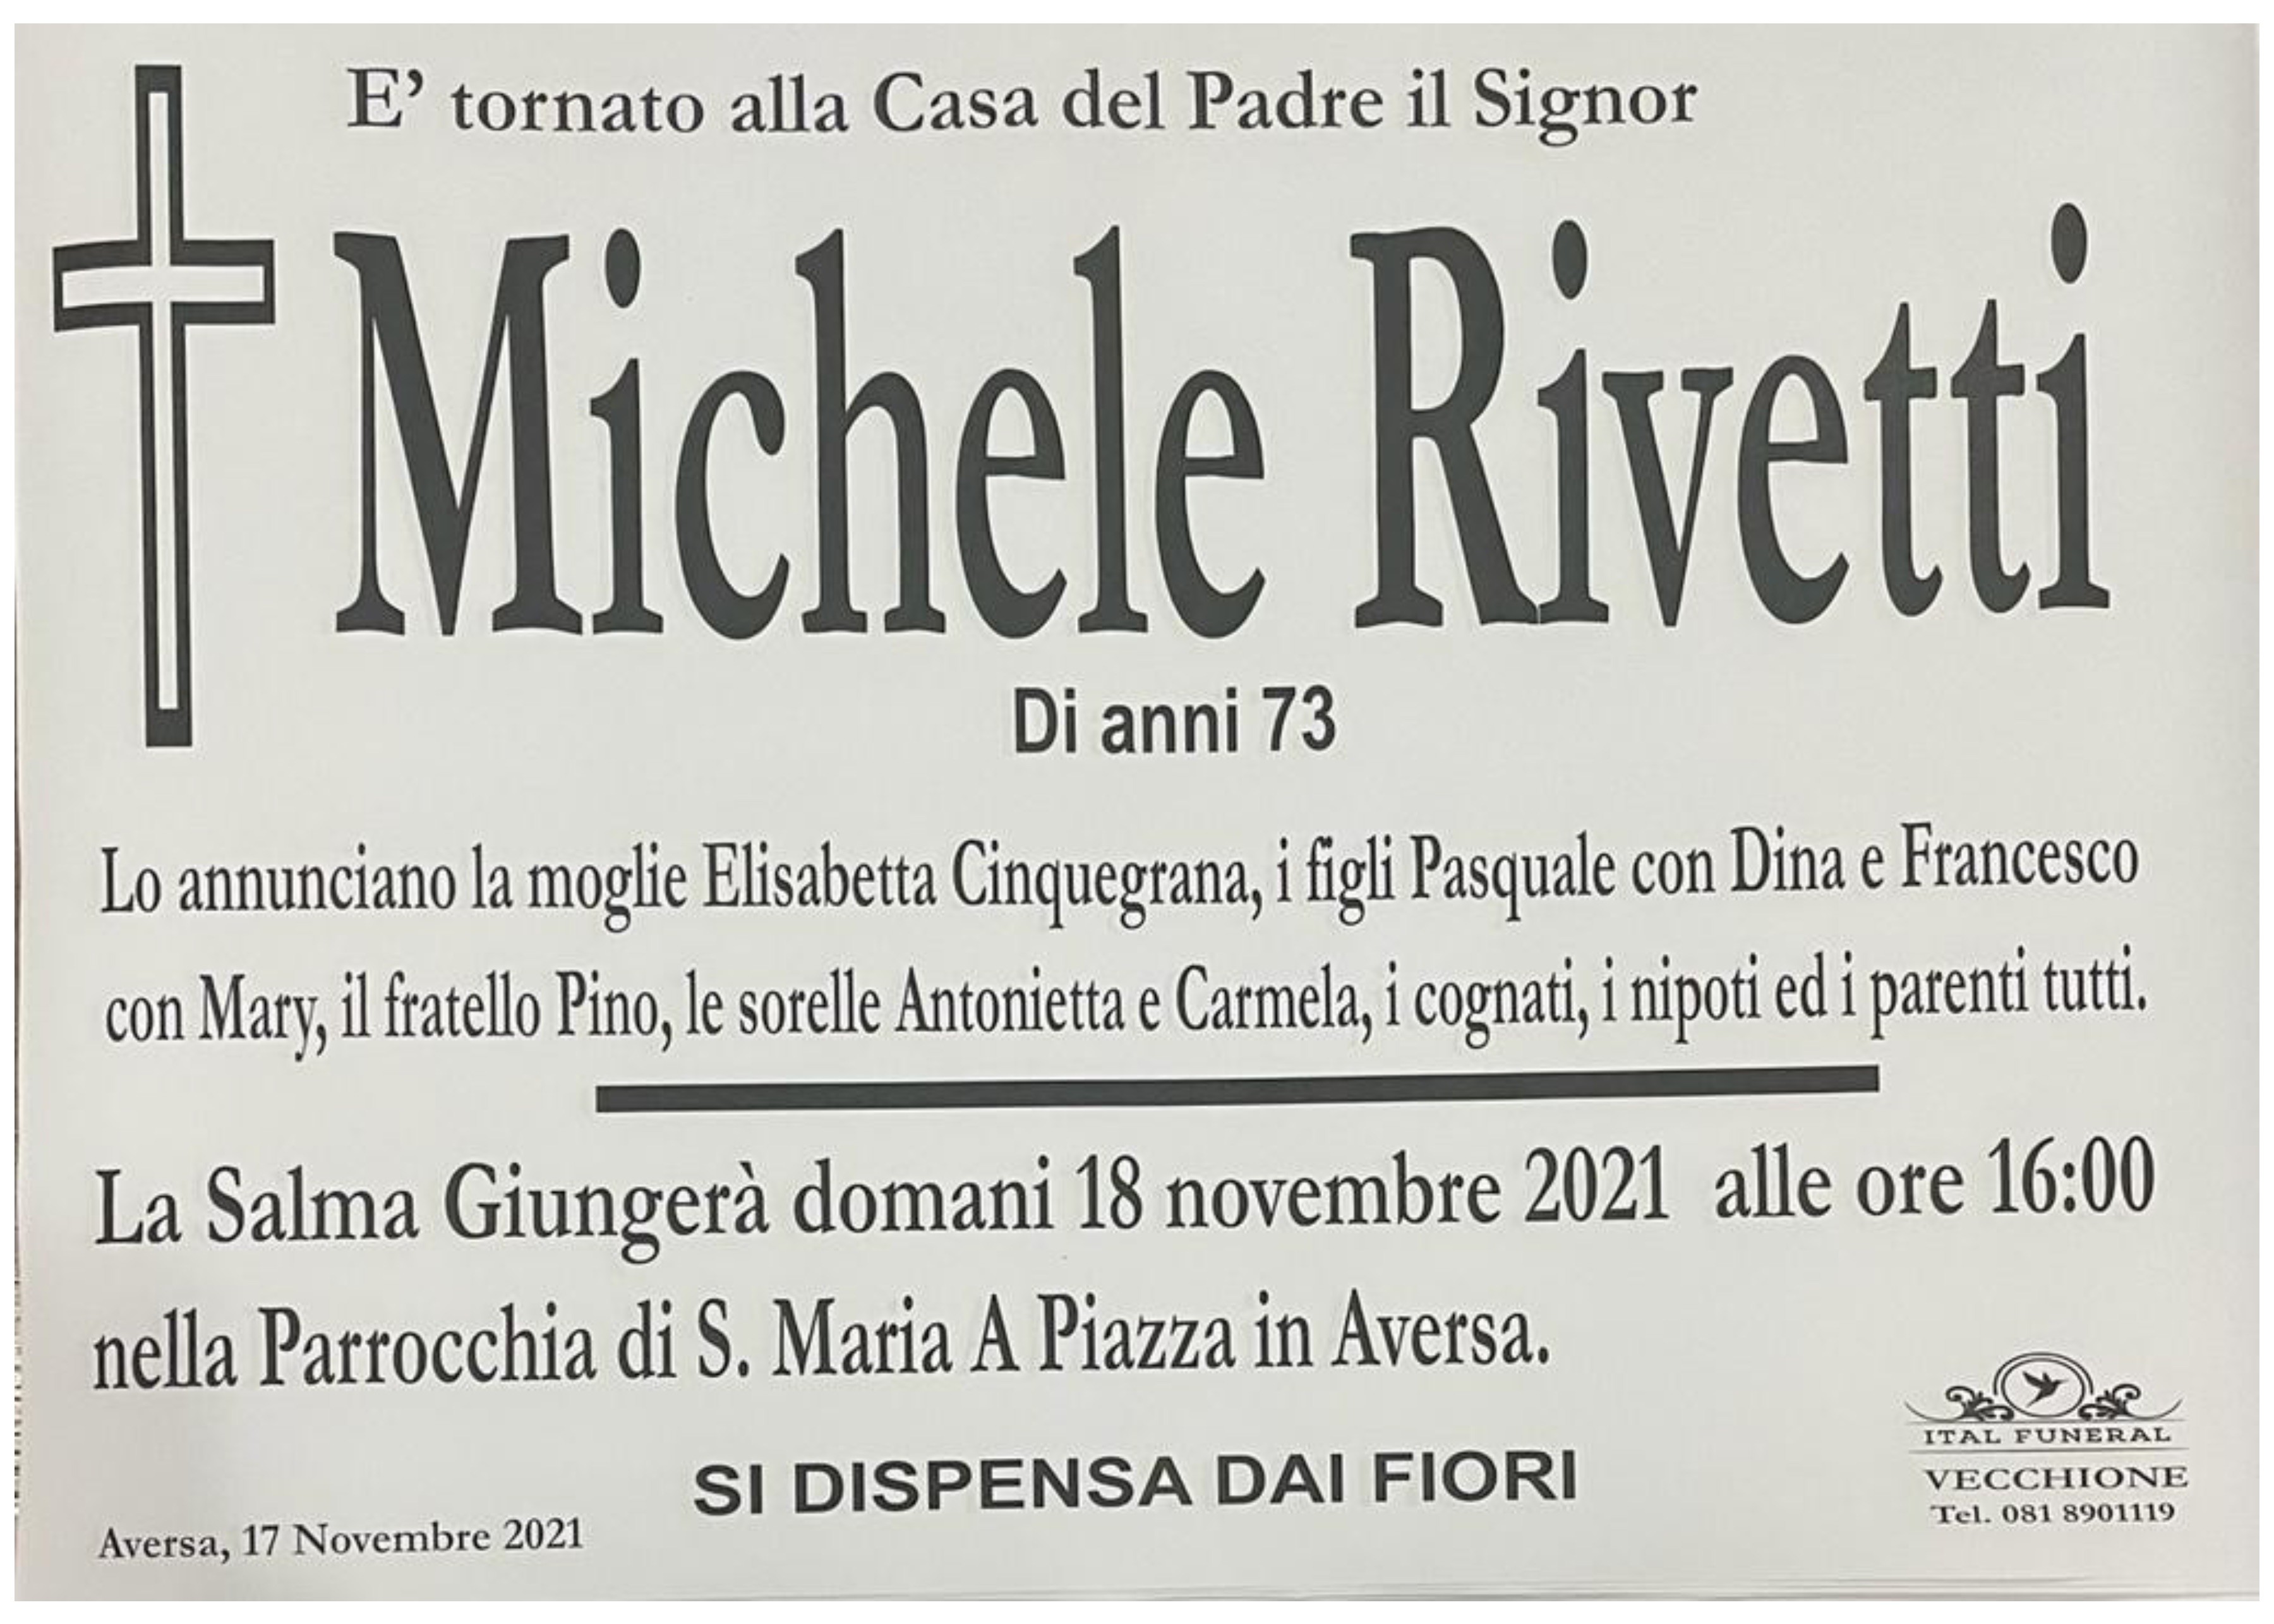 Michele Rivetti